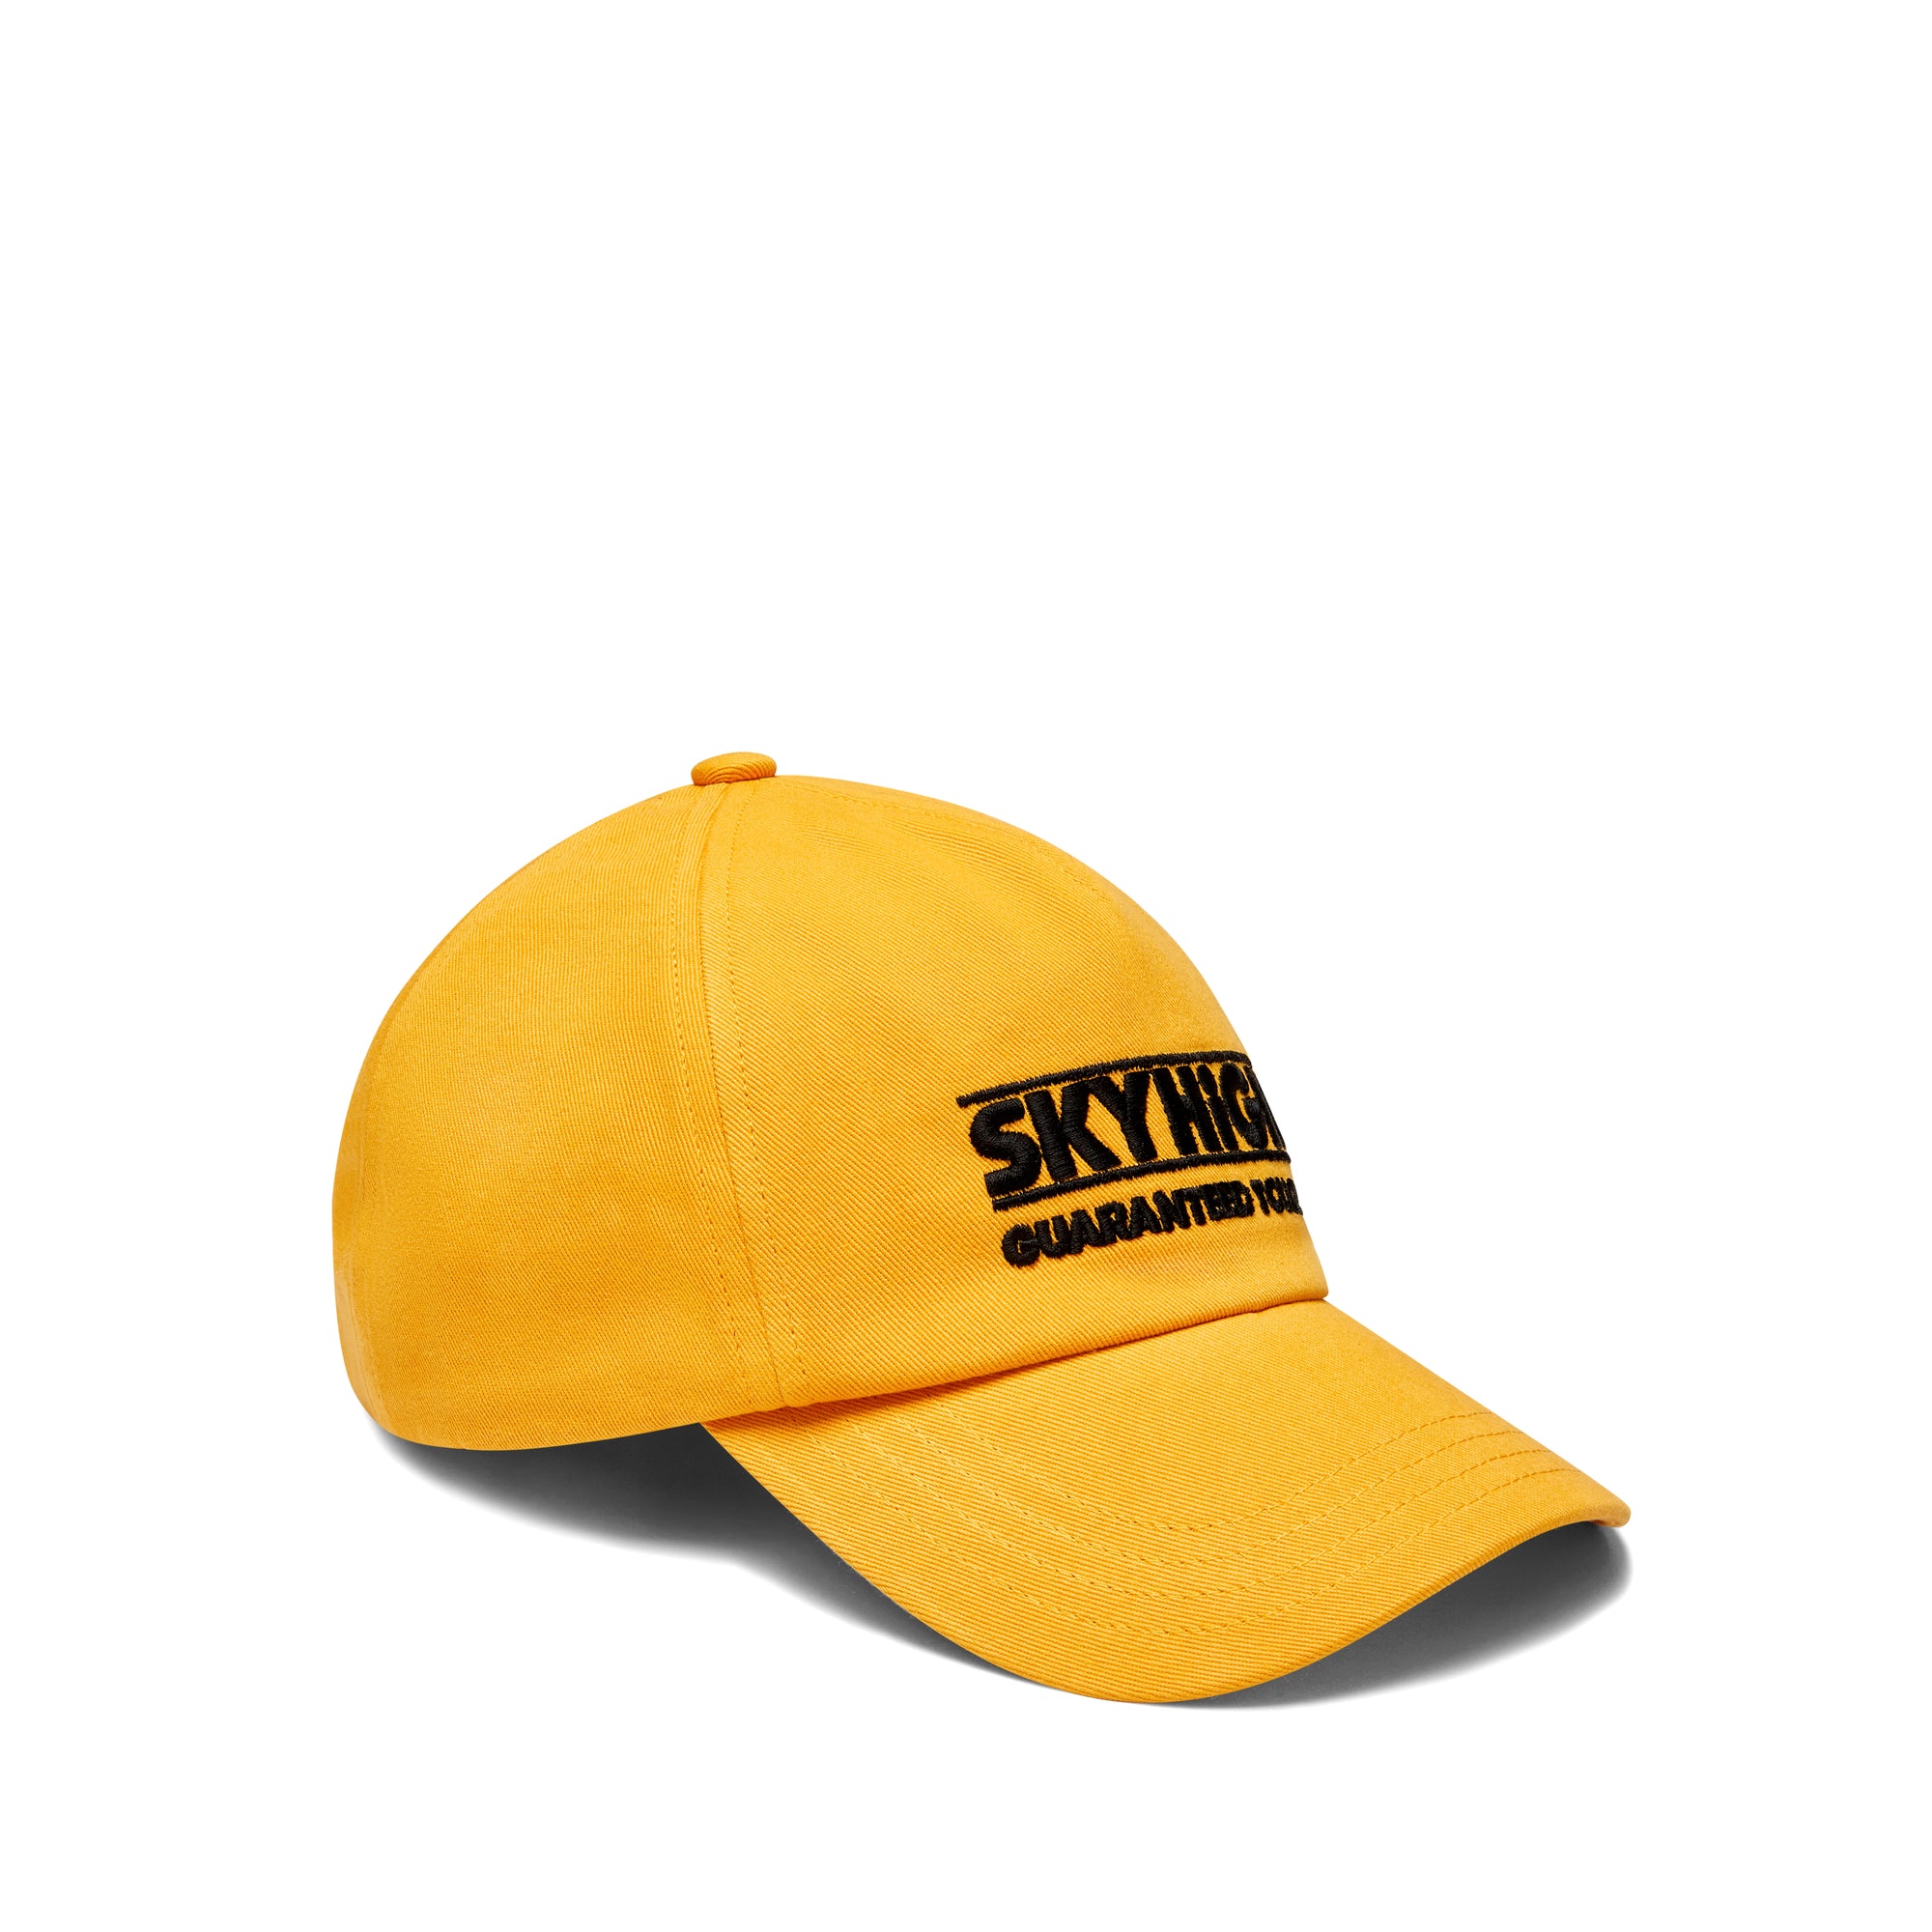 Sky High Farm - Men's Construction Graphic Logo Cap - (Yellow)